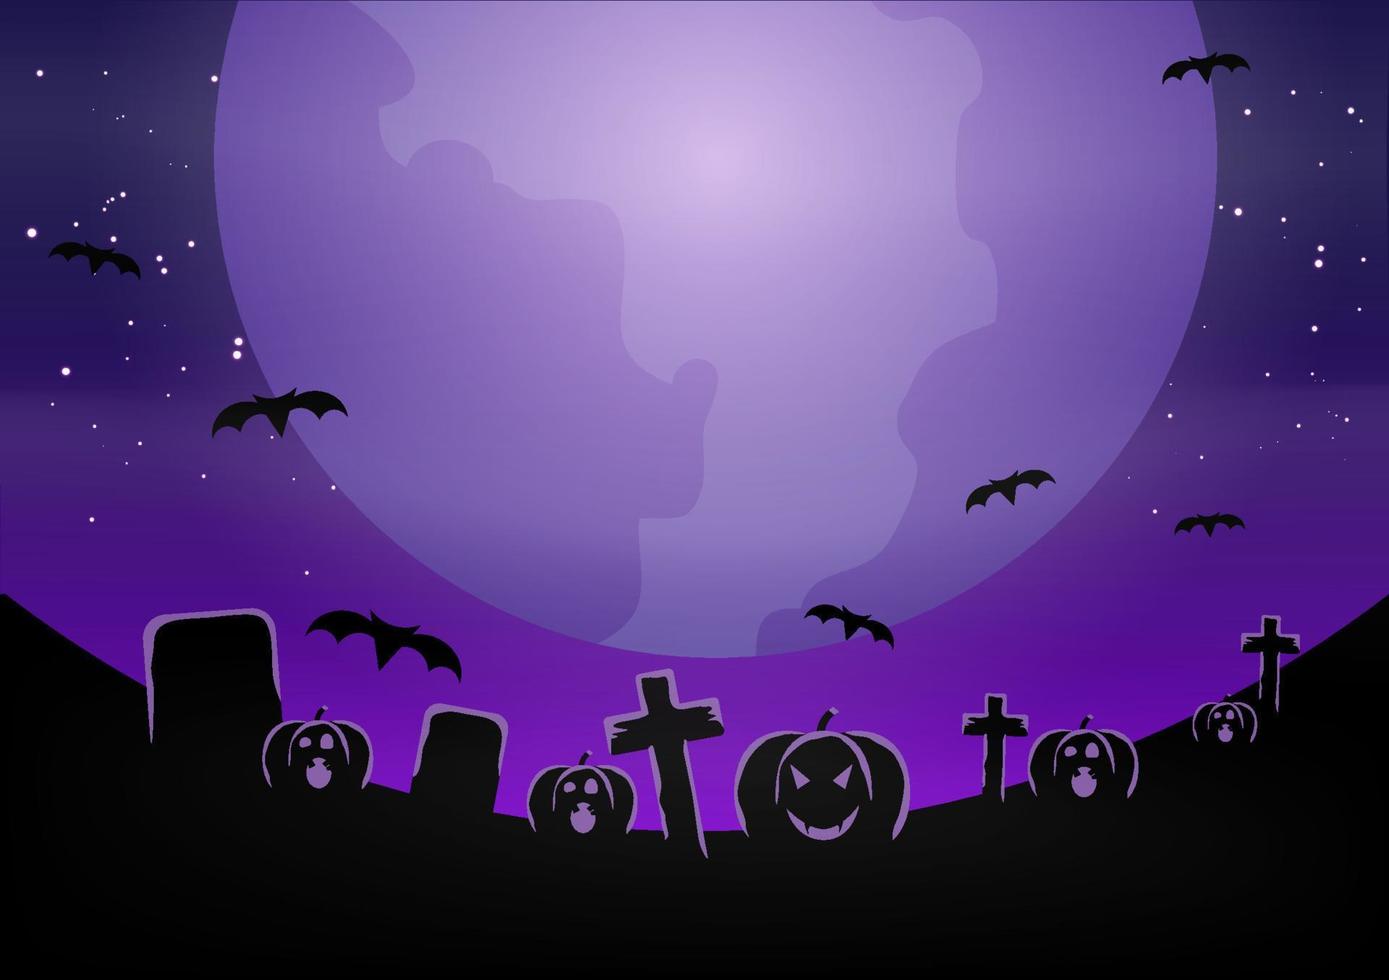 pancarta de halloween con calabaza. ilustración plana vectorial. noche de luna llena en un bosque espeluznante. vector